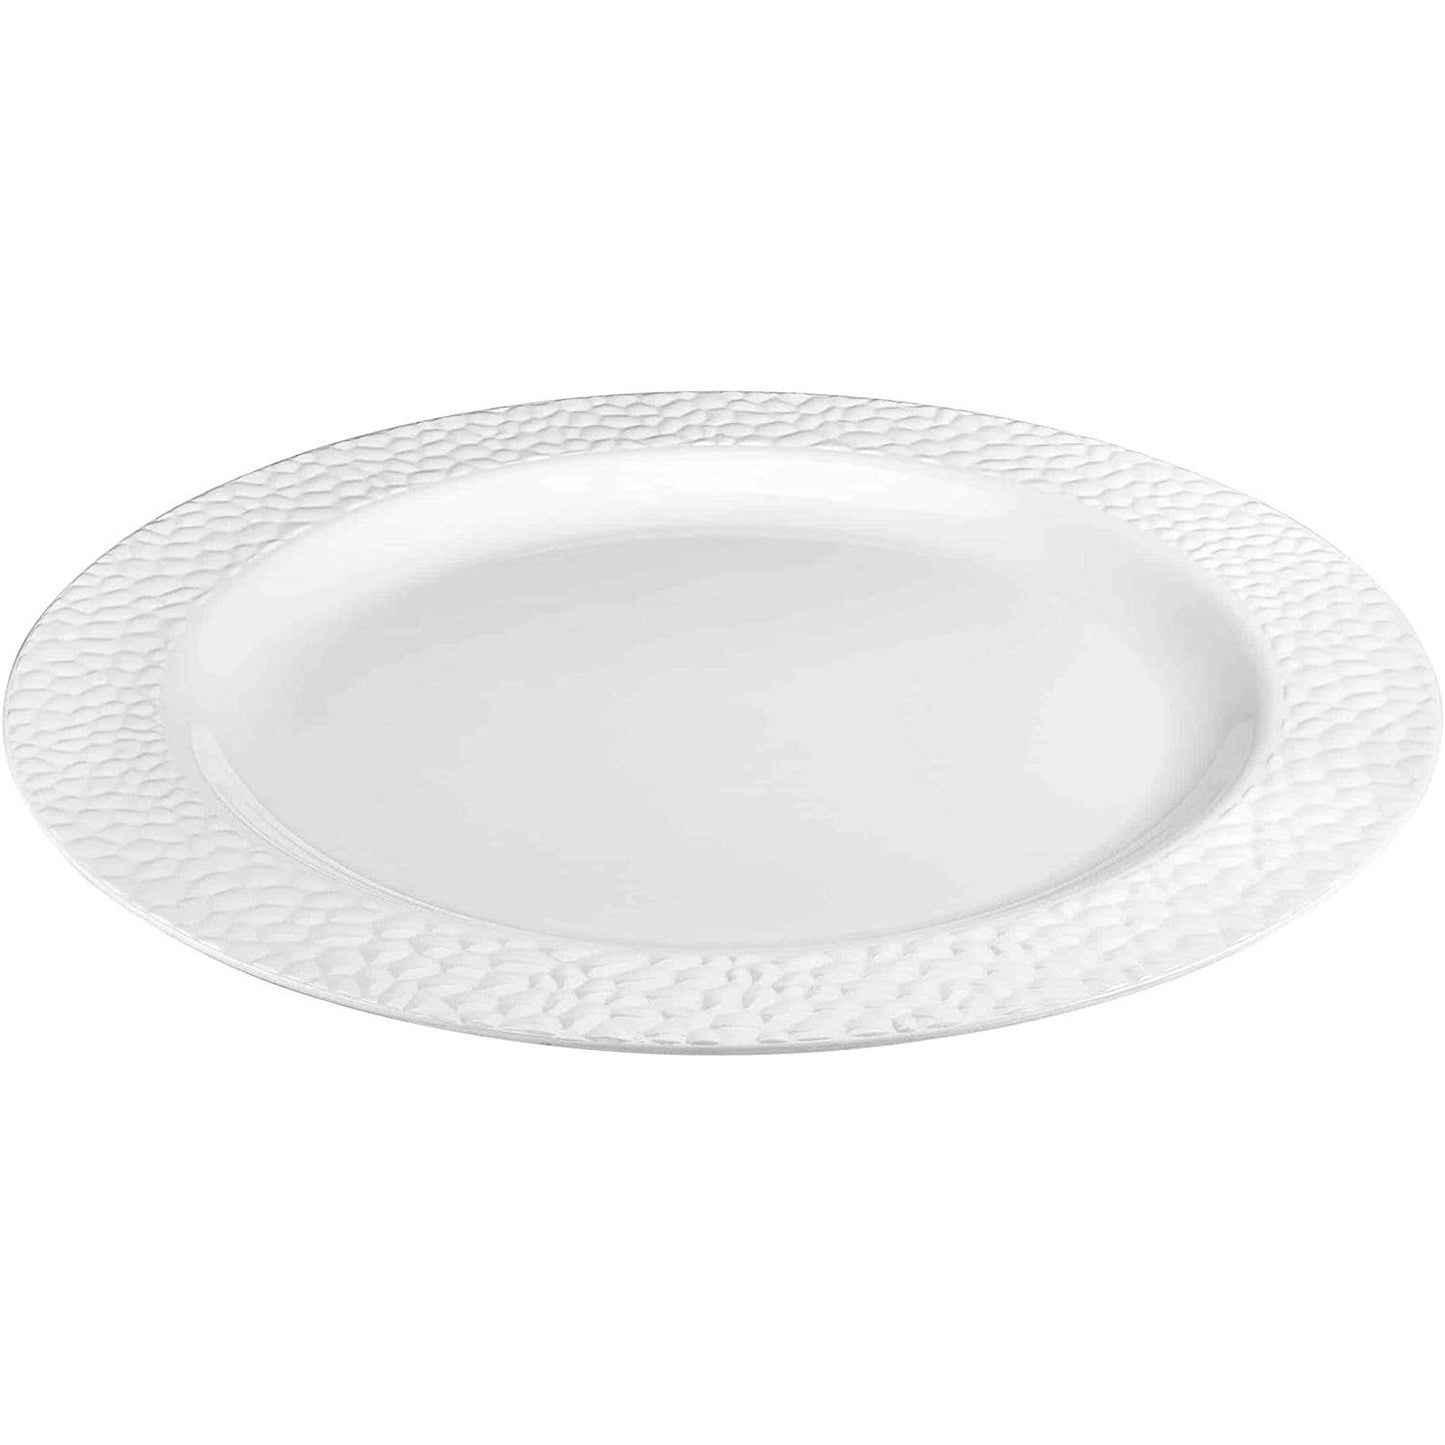 Pebbled Plastic Dinner Plate White Rim 9" Elegant Plates Lillian   